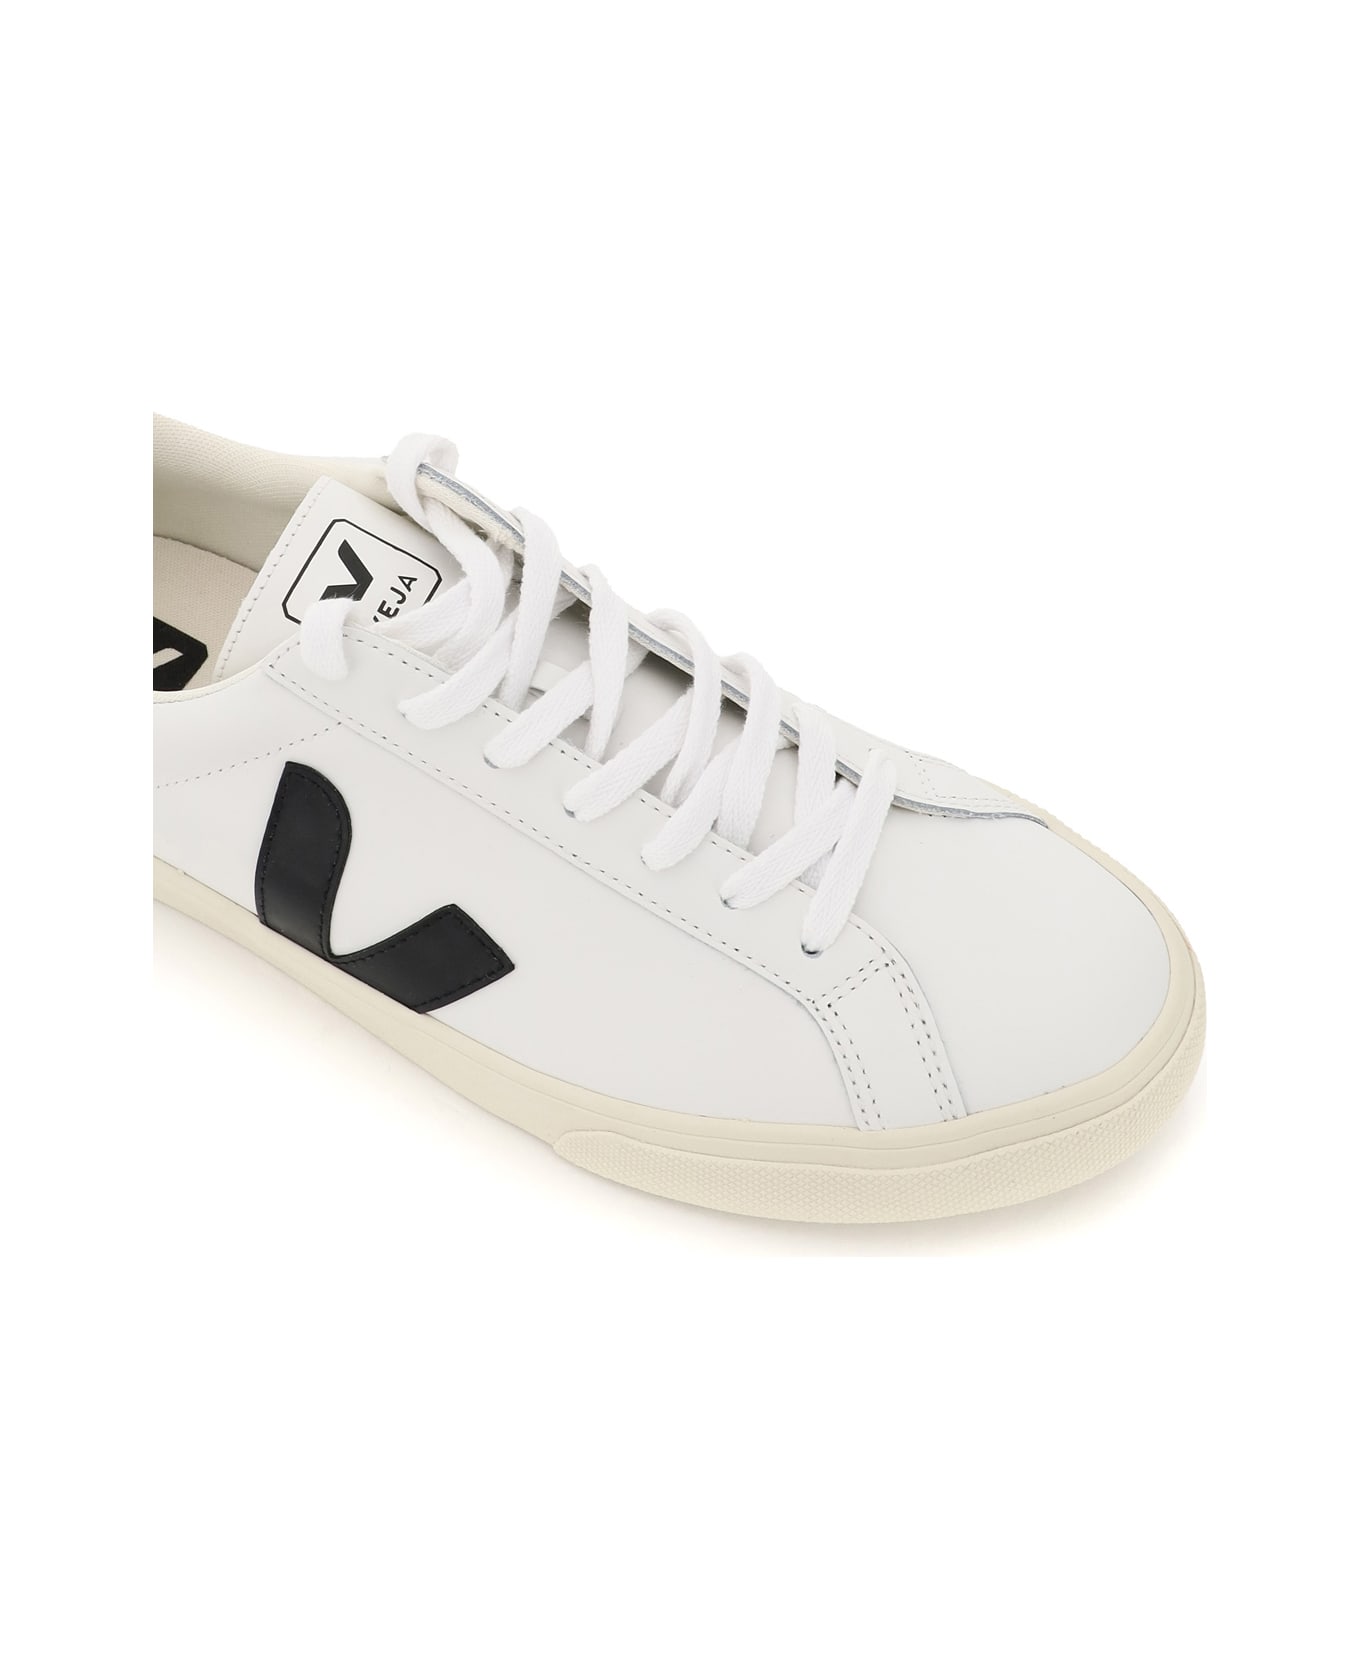 Veja Esplar Leather Sneakers - EXTRA WHITE BLACK (White)